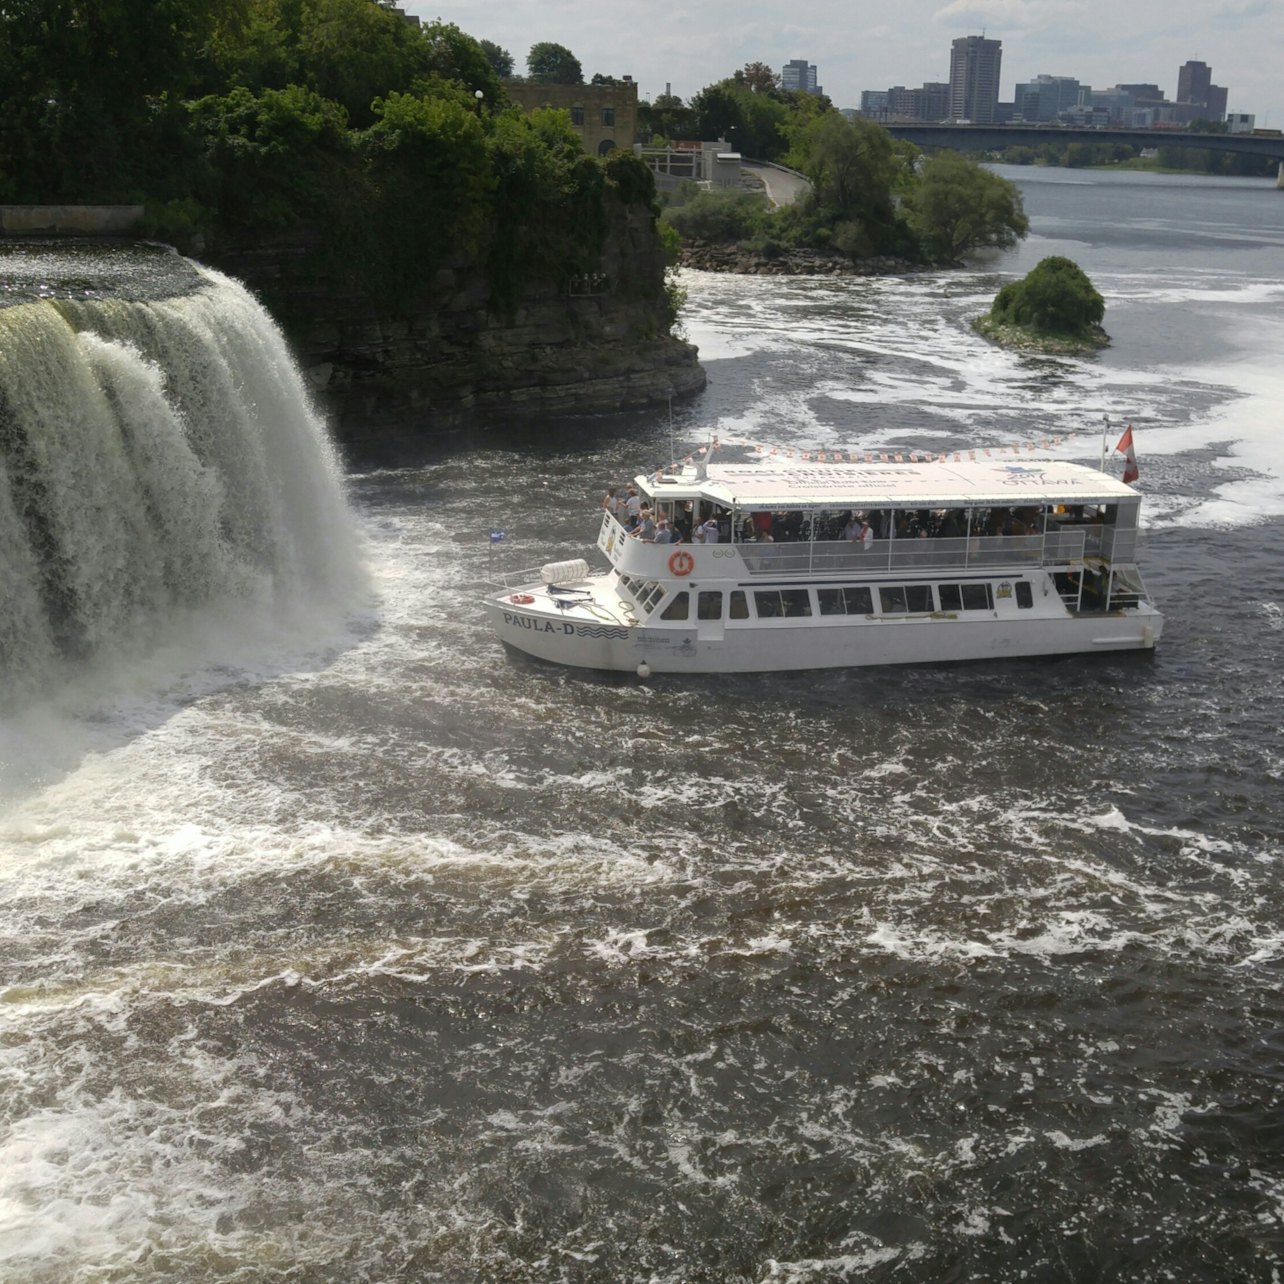 Ottawa River Boat Cruise - Accommodations in Ottawa